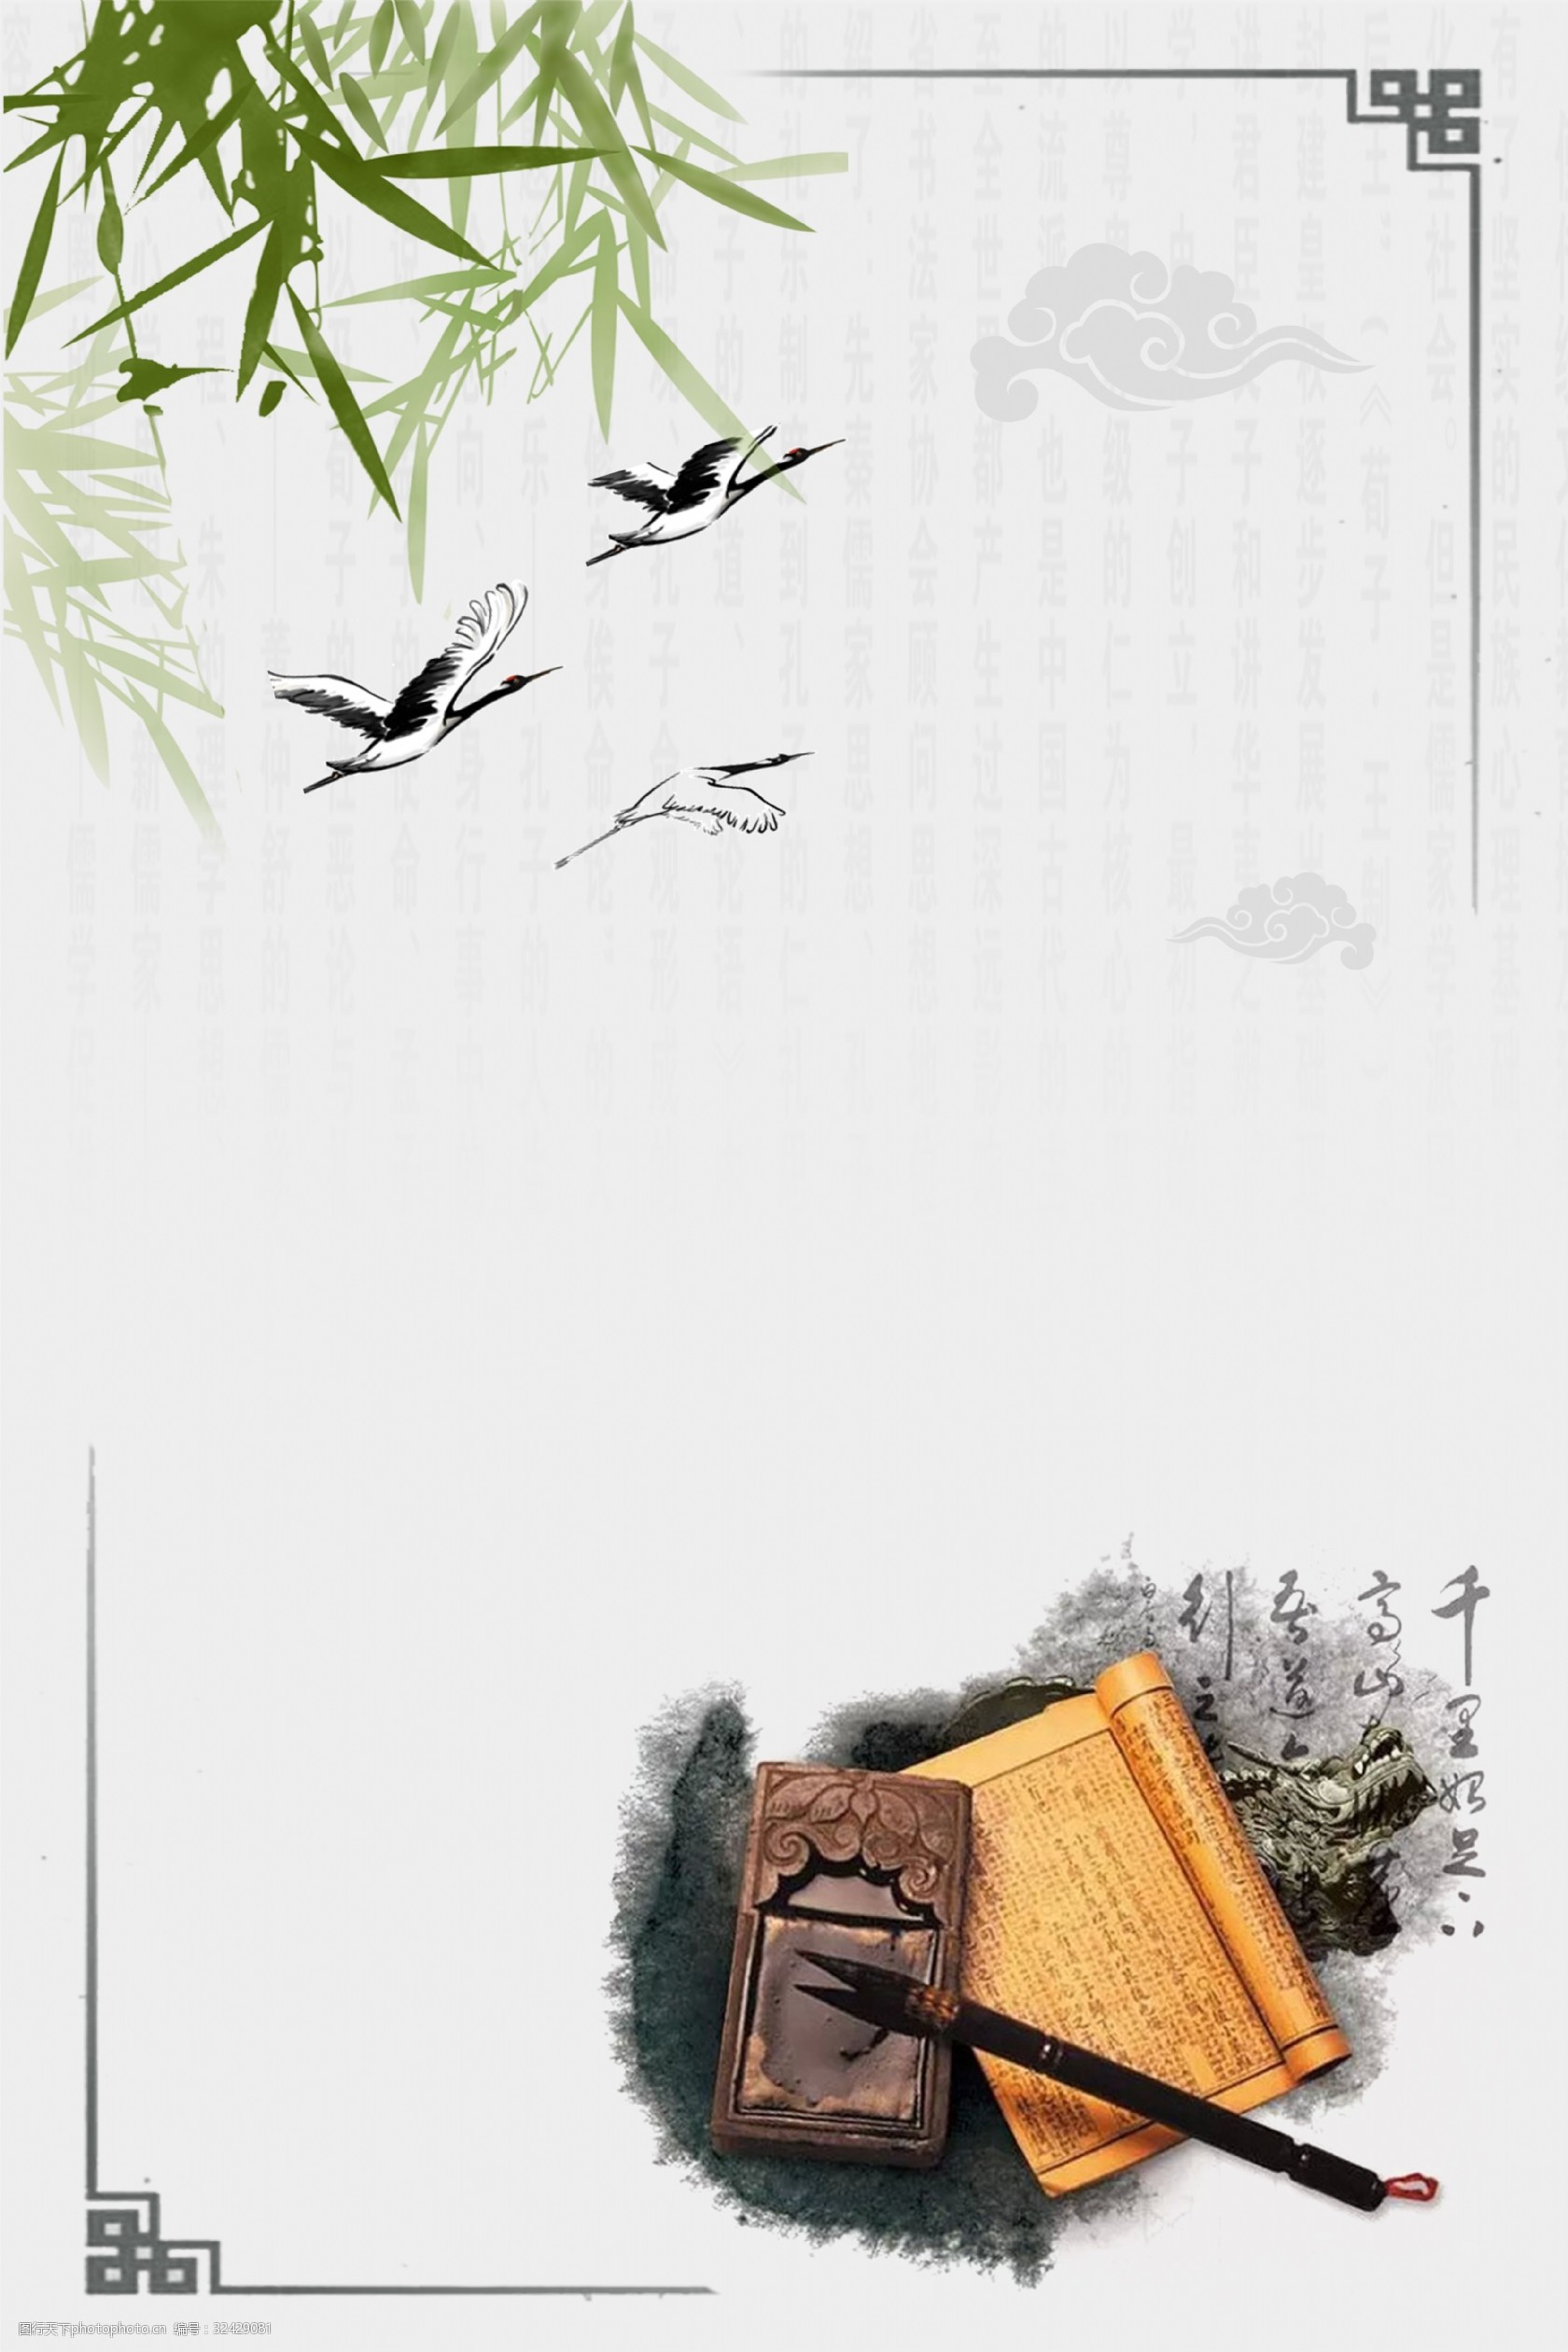 中国风海报背景模板 中国风 古典 墨迹 水墨 竹子 笔墨纸砚 手绘 竹